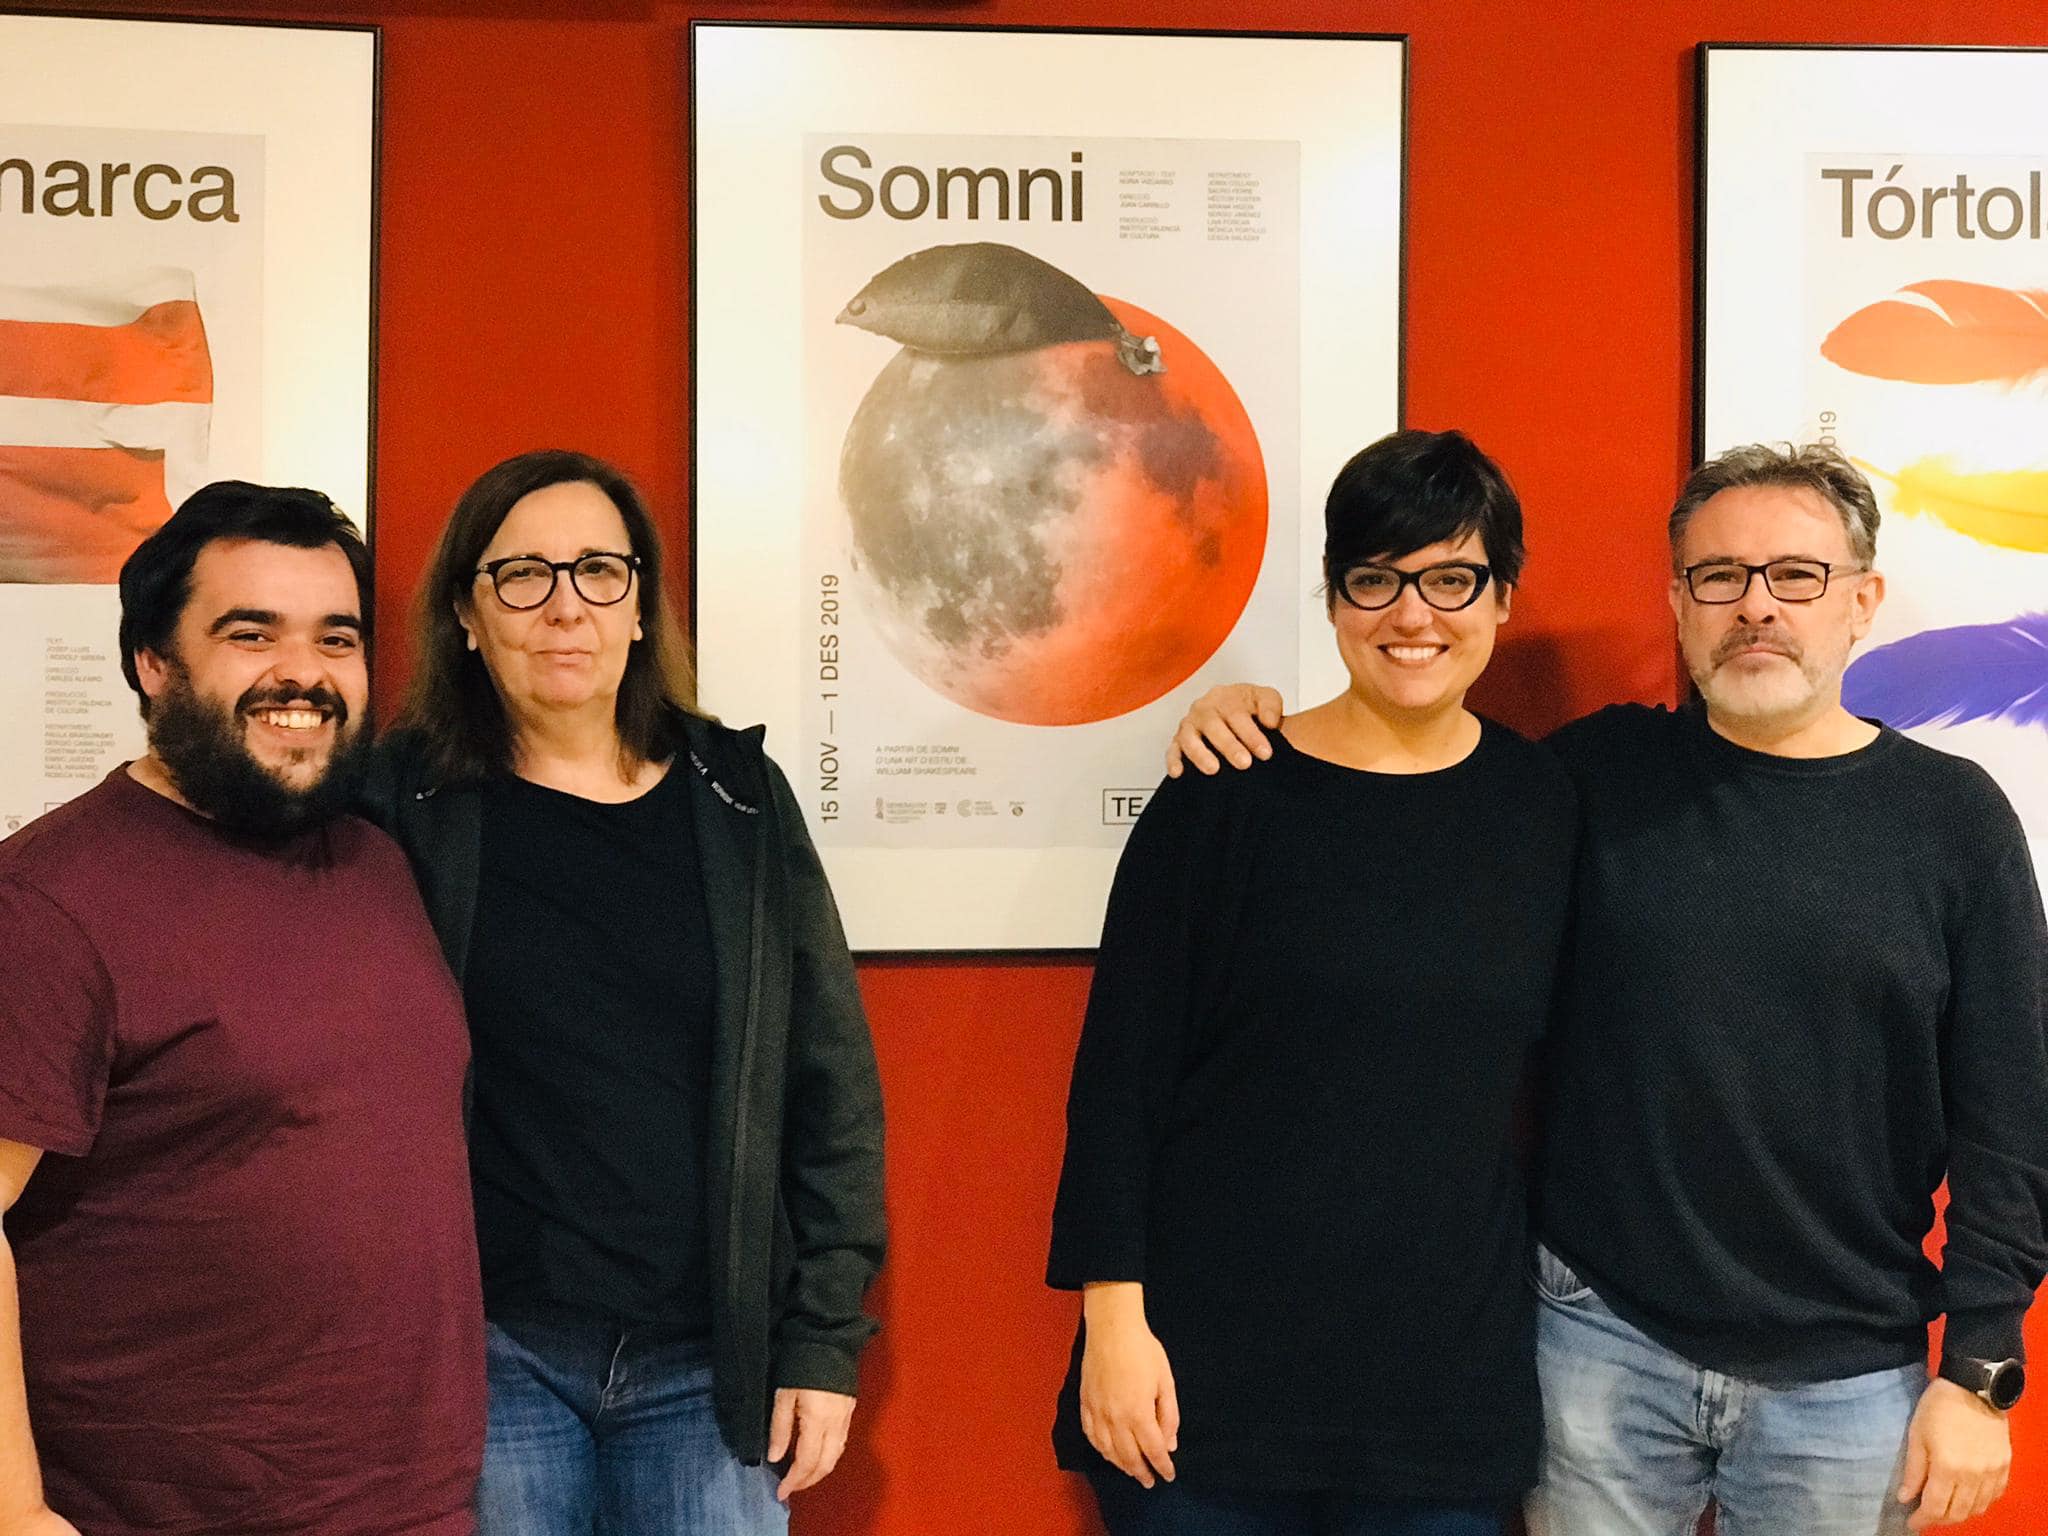 El Institut Valencià de Cultura presenta su producción “SOMNI”